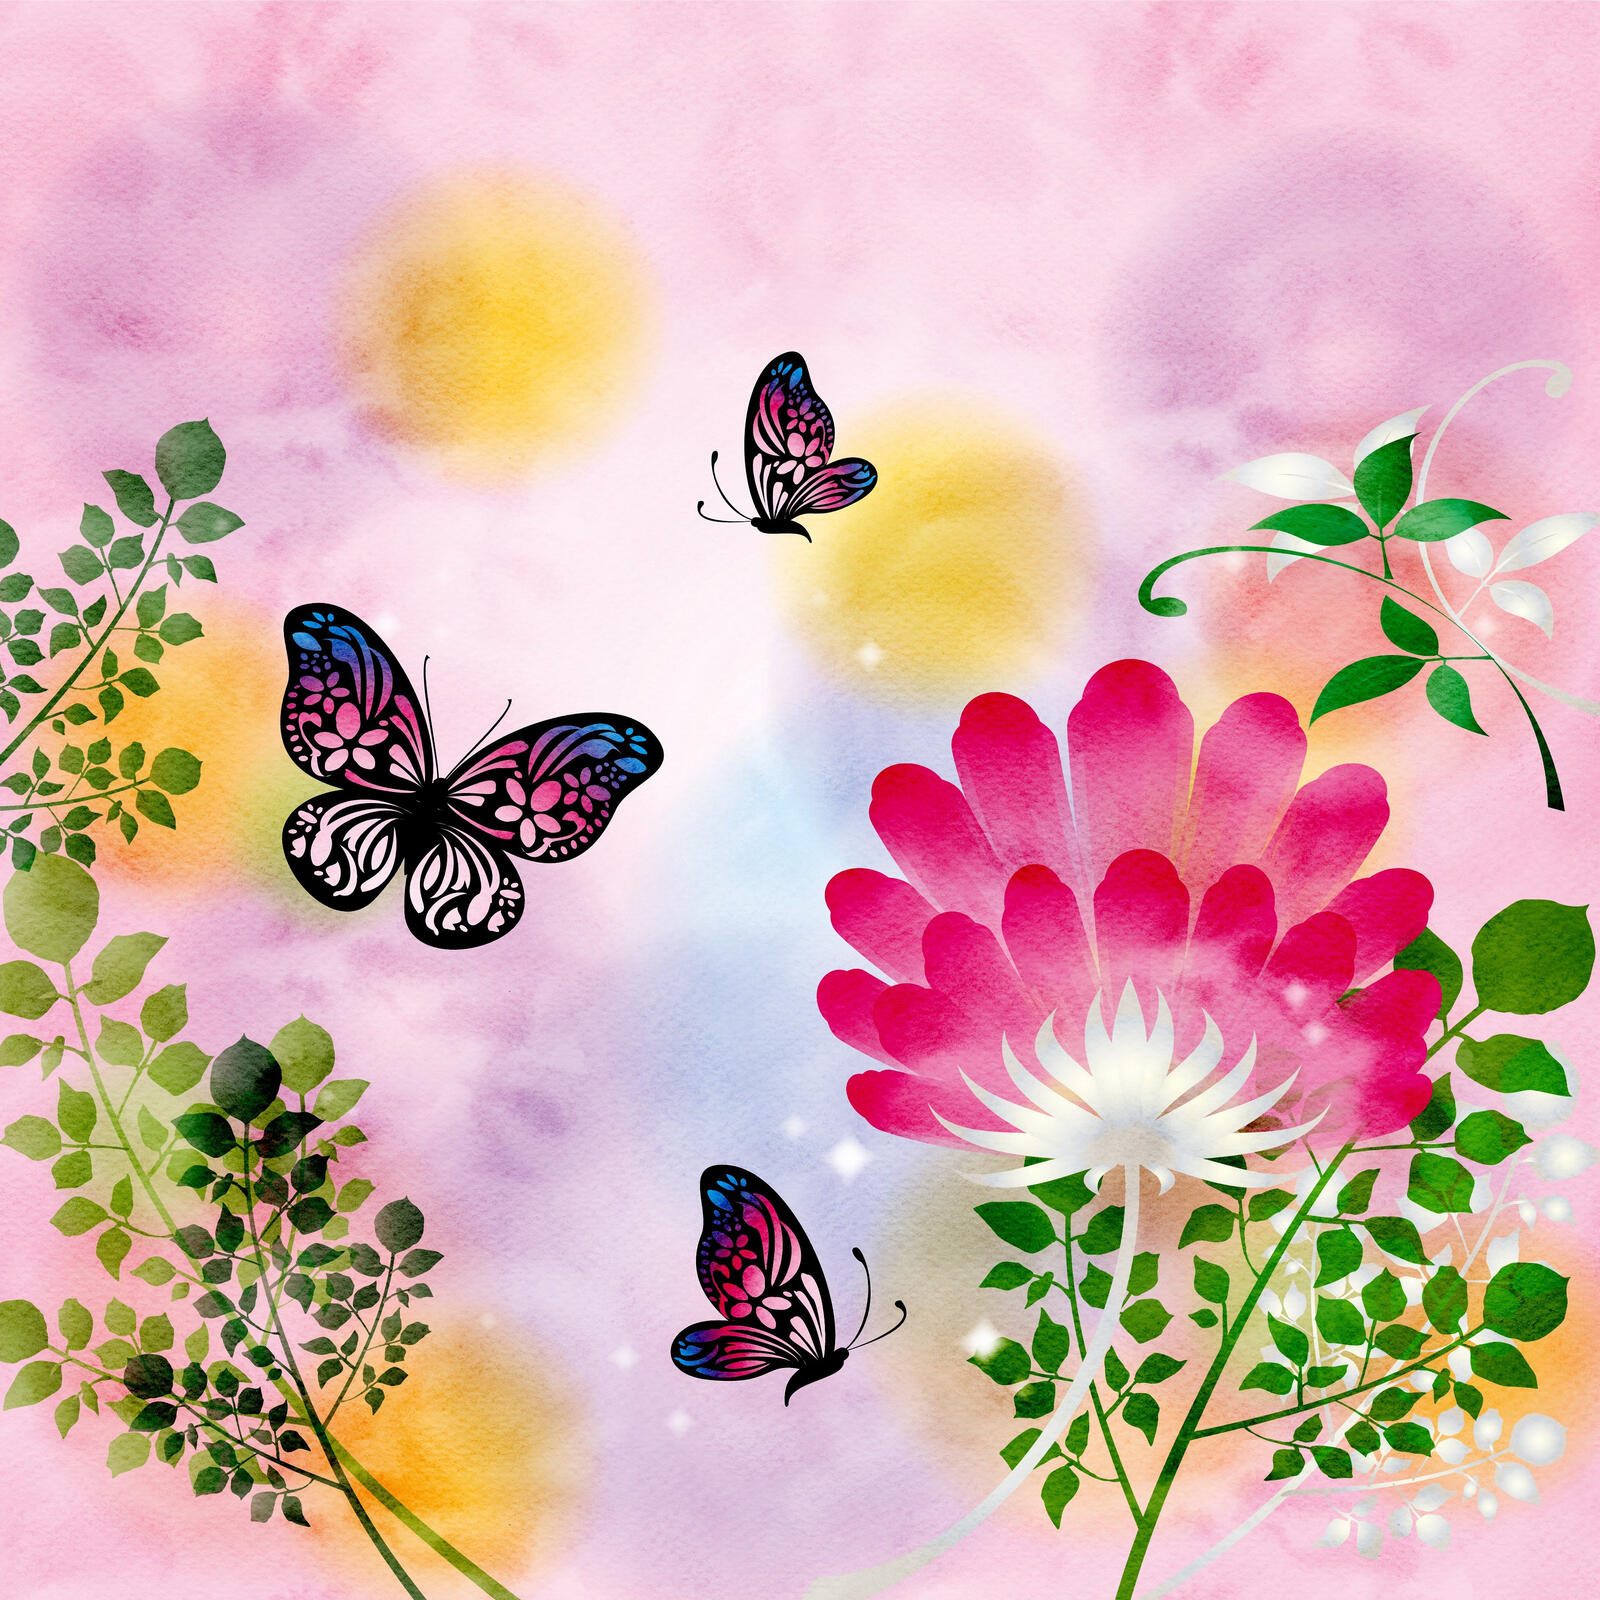 Wallpapers butterflies butterflies painting art flowers on the desktop